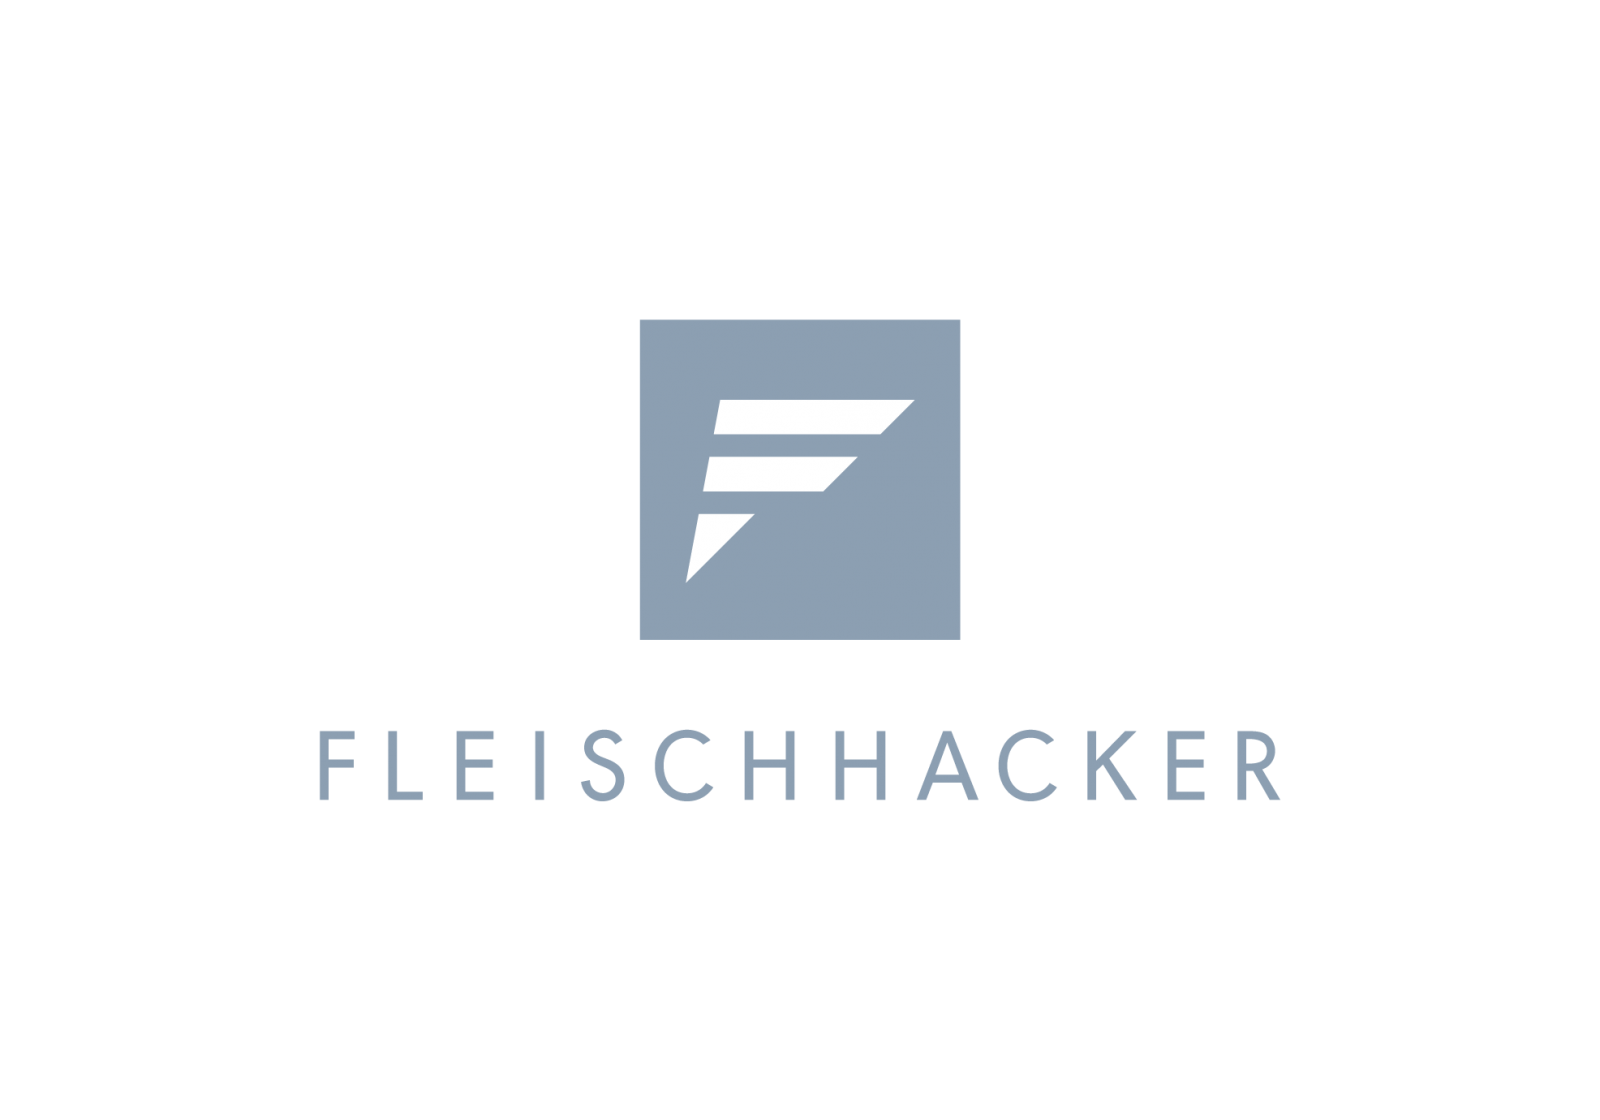 Fleischhacker GmbH & Co. KG